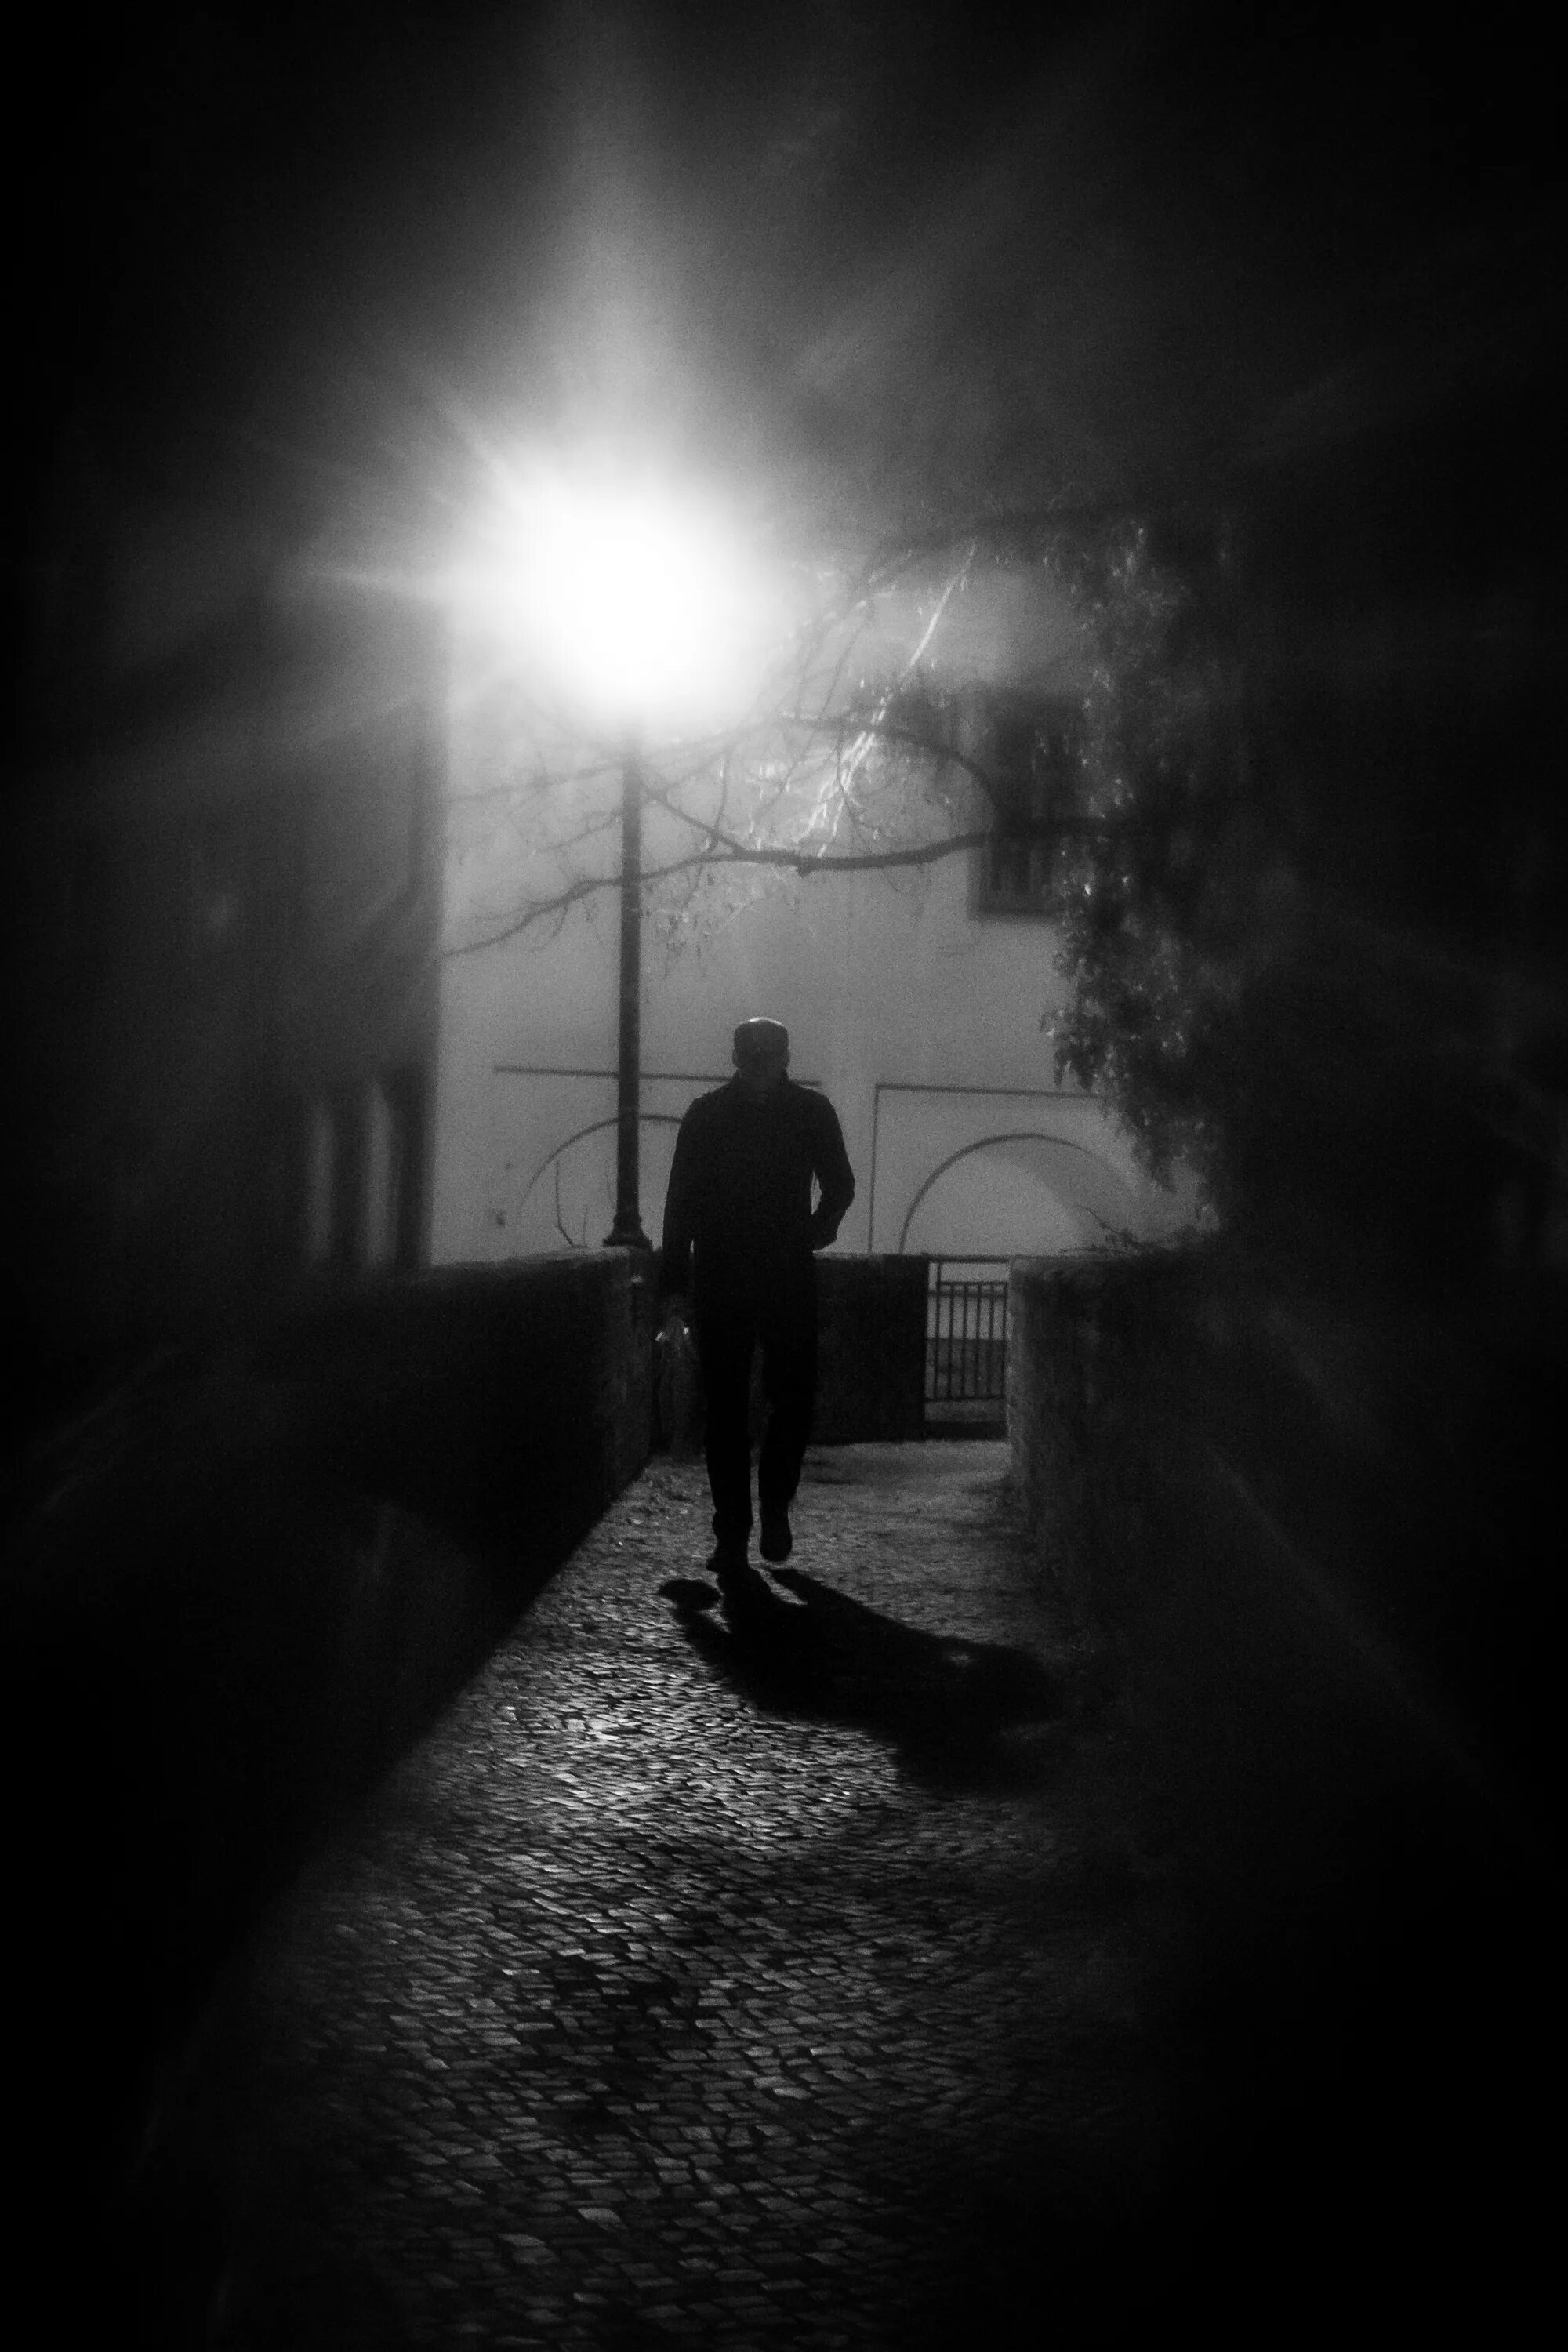 Читать шаг в тень. Парень в темноте. Человек на темной улице. Тени ушедших. Одиночество в ночи.